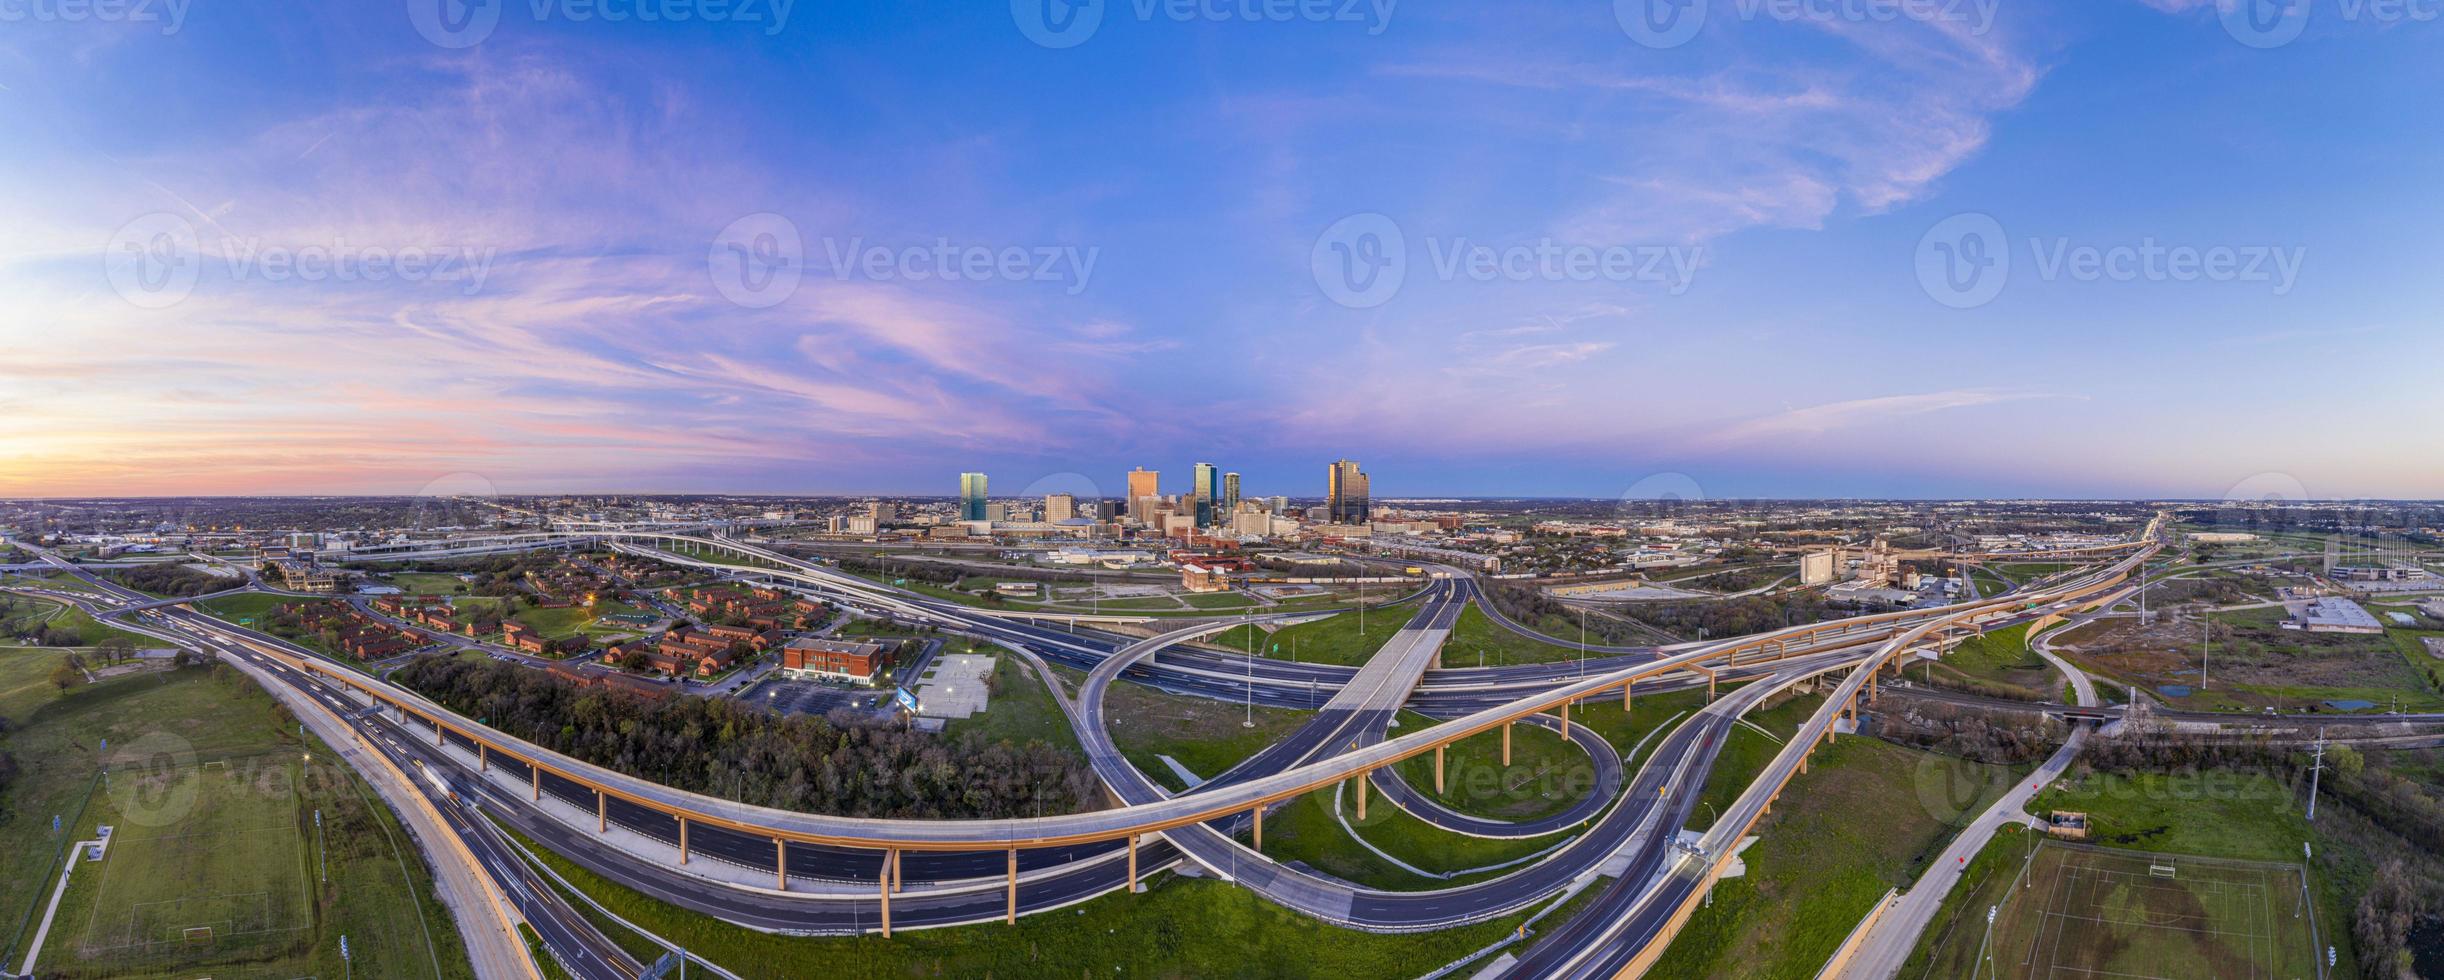 Luftpanoramabild der Skyline von Fort Worth bei Sonnenaufgang mit Autobahnkreuzung in Texas foto